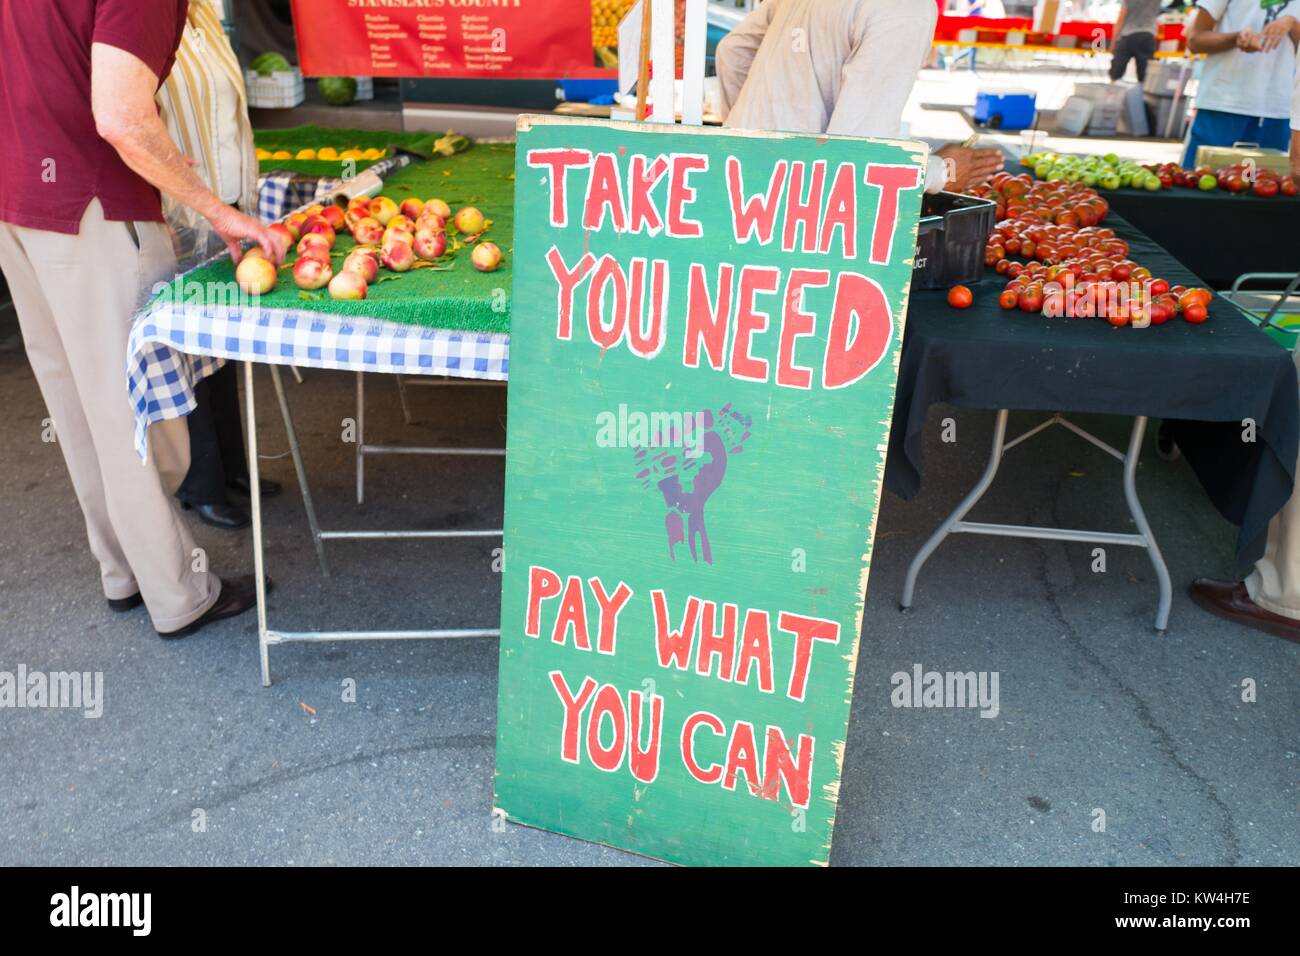 A un marché d'agriculteurs dans la région de la baie de San Francisco ville de Danville, en Californie, un signe pour une exploitation collective comporte une image d'un poing tenant une gerbe de blé et invite les visiteurs à "prendre ce dont vous avez besoin, ce que vous pouvez payer', le 13 août 2016. Banque D'Images